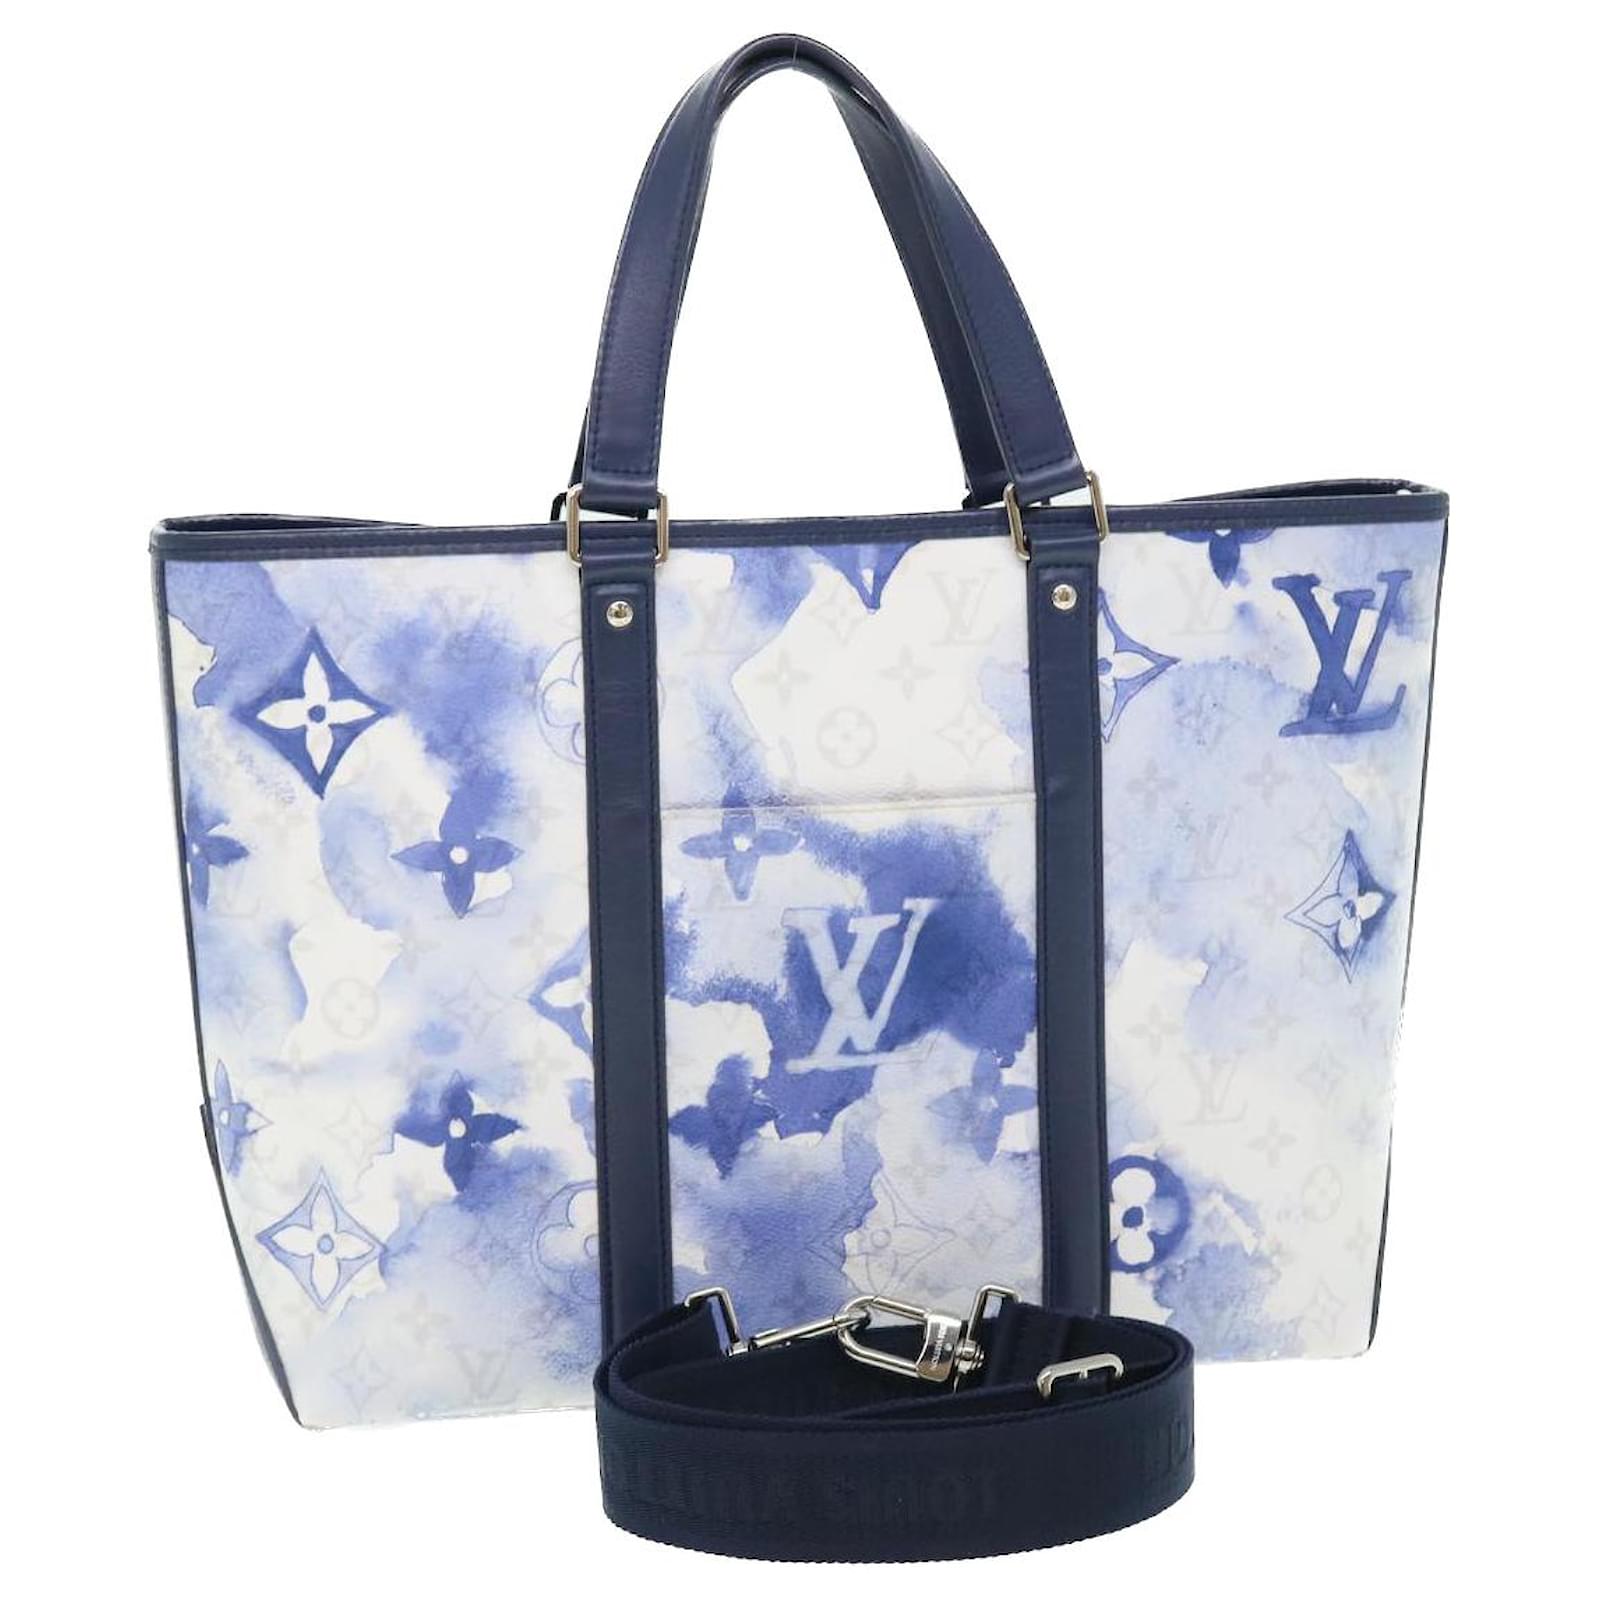 Totes Louis Vuitton Louis Vuitton Monogram Kimono PM Tote Bag 2way Black M41855 LV Auth 43635a